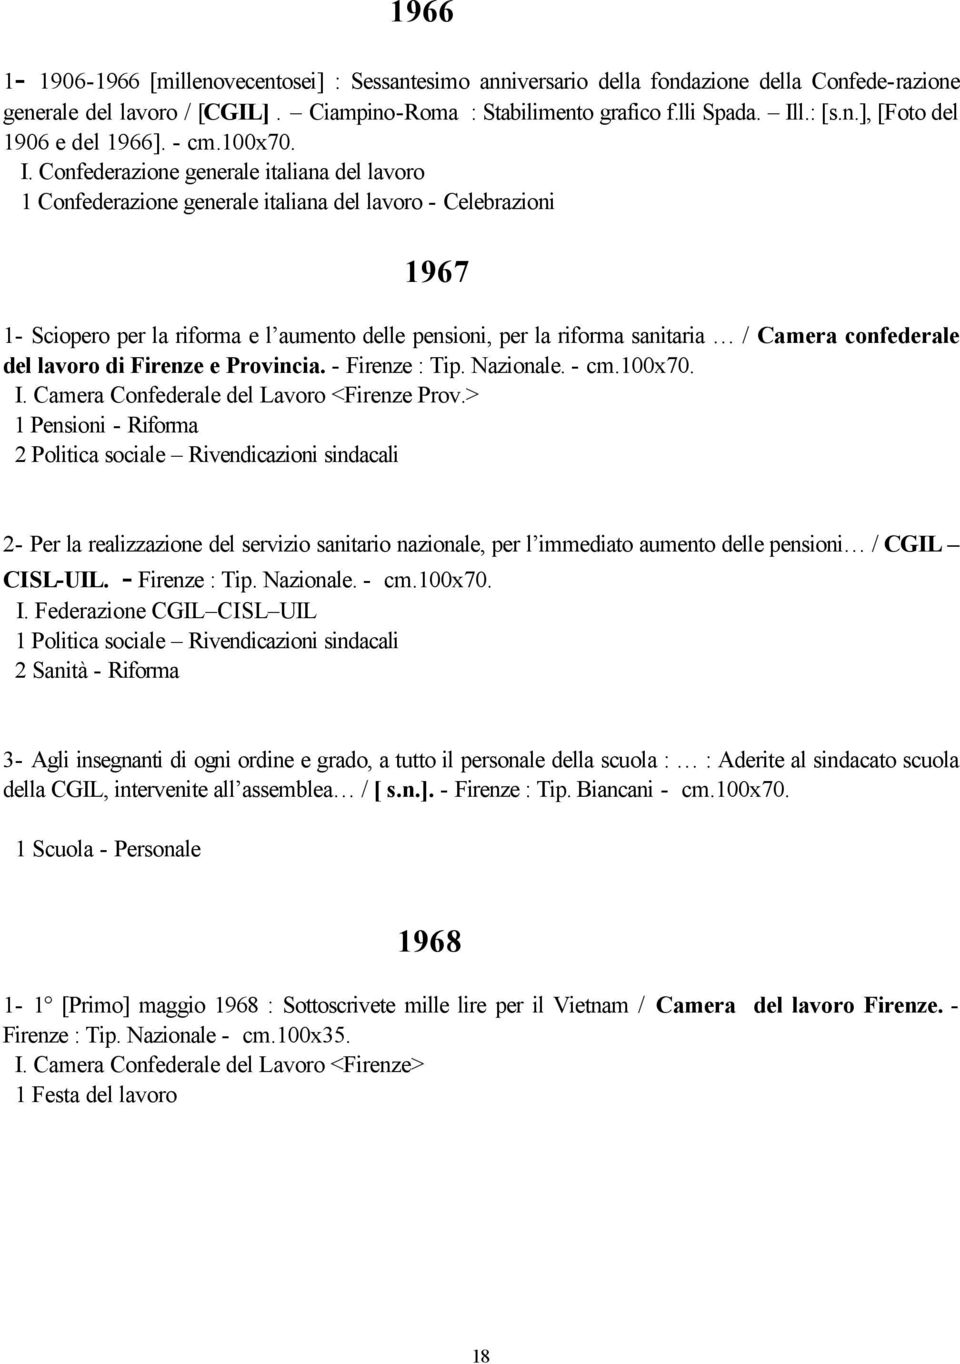 Confederazione generale italiana del lavoro 1 Confederazione generale italiana del lavoro - Celebrazioni 1967 1- Sciopero per la riforma e l aumento delle pensioni, per la riforma sanitaria / Camera